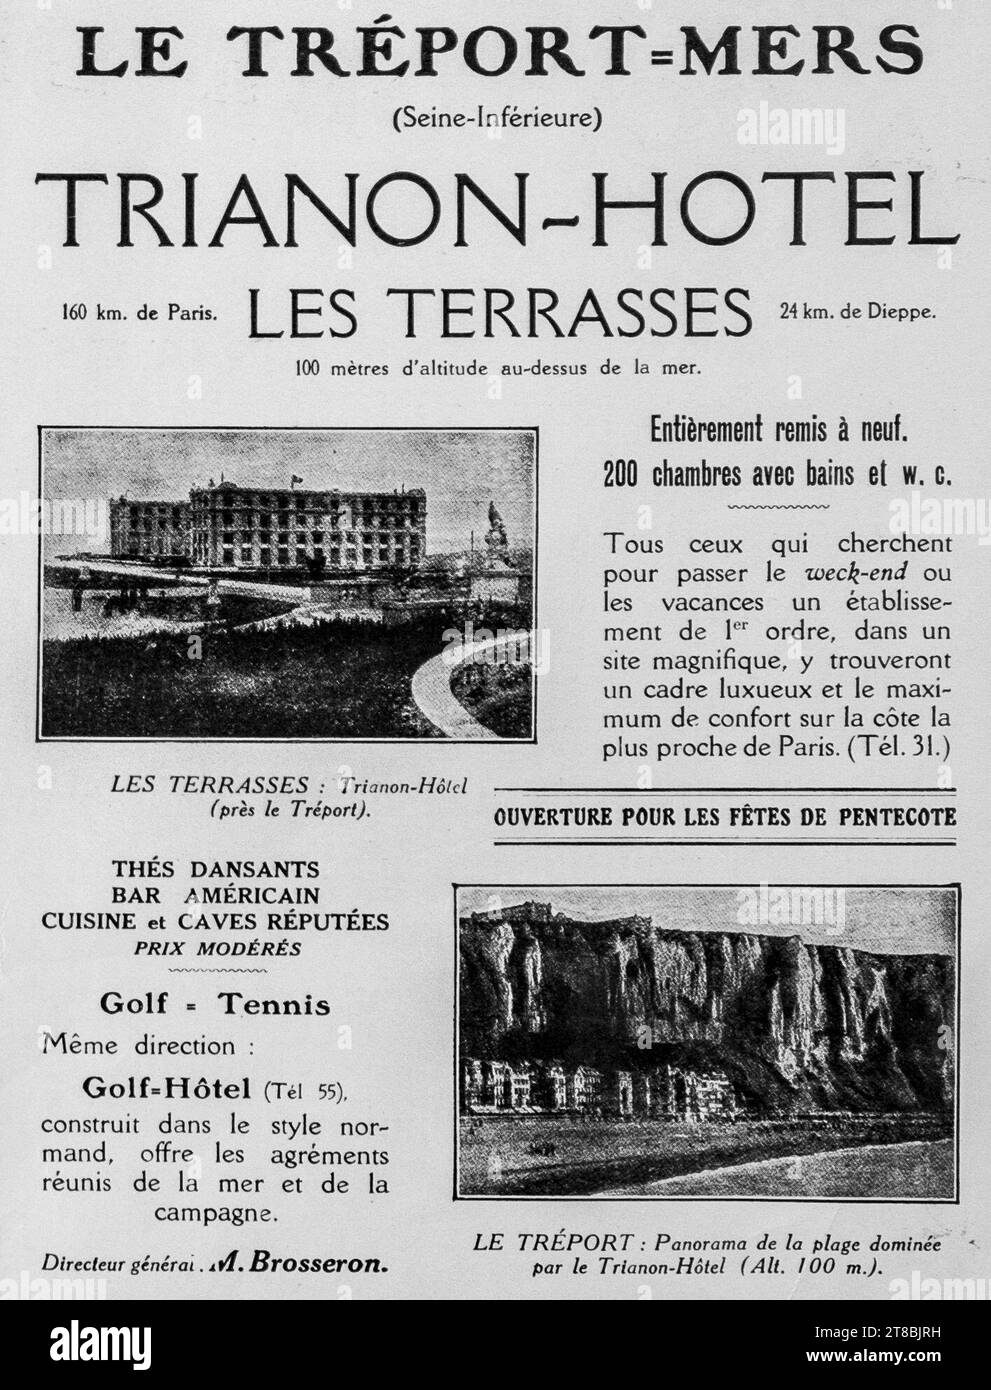 Eine Vintage-Werbung in französischer Sprache aus dem Jahr 1926 für Trianon-Hôtel in Le Tréport-Mers, Frankreich. Die Werbung zeigt Bilder des Hotels und der umliegenden Landschaft und erwähnt die Einrichtungen des Hotels. Stockfoto